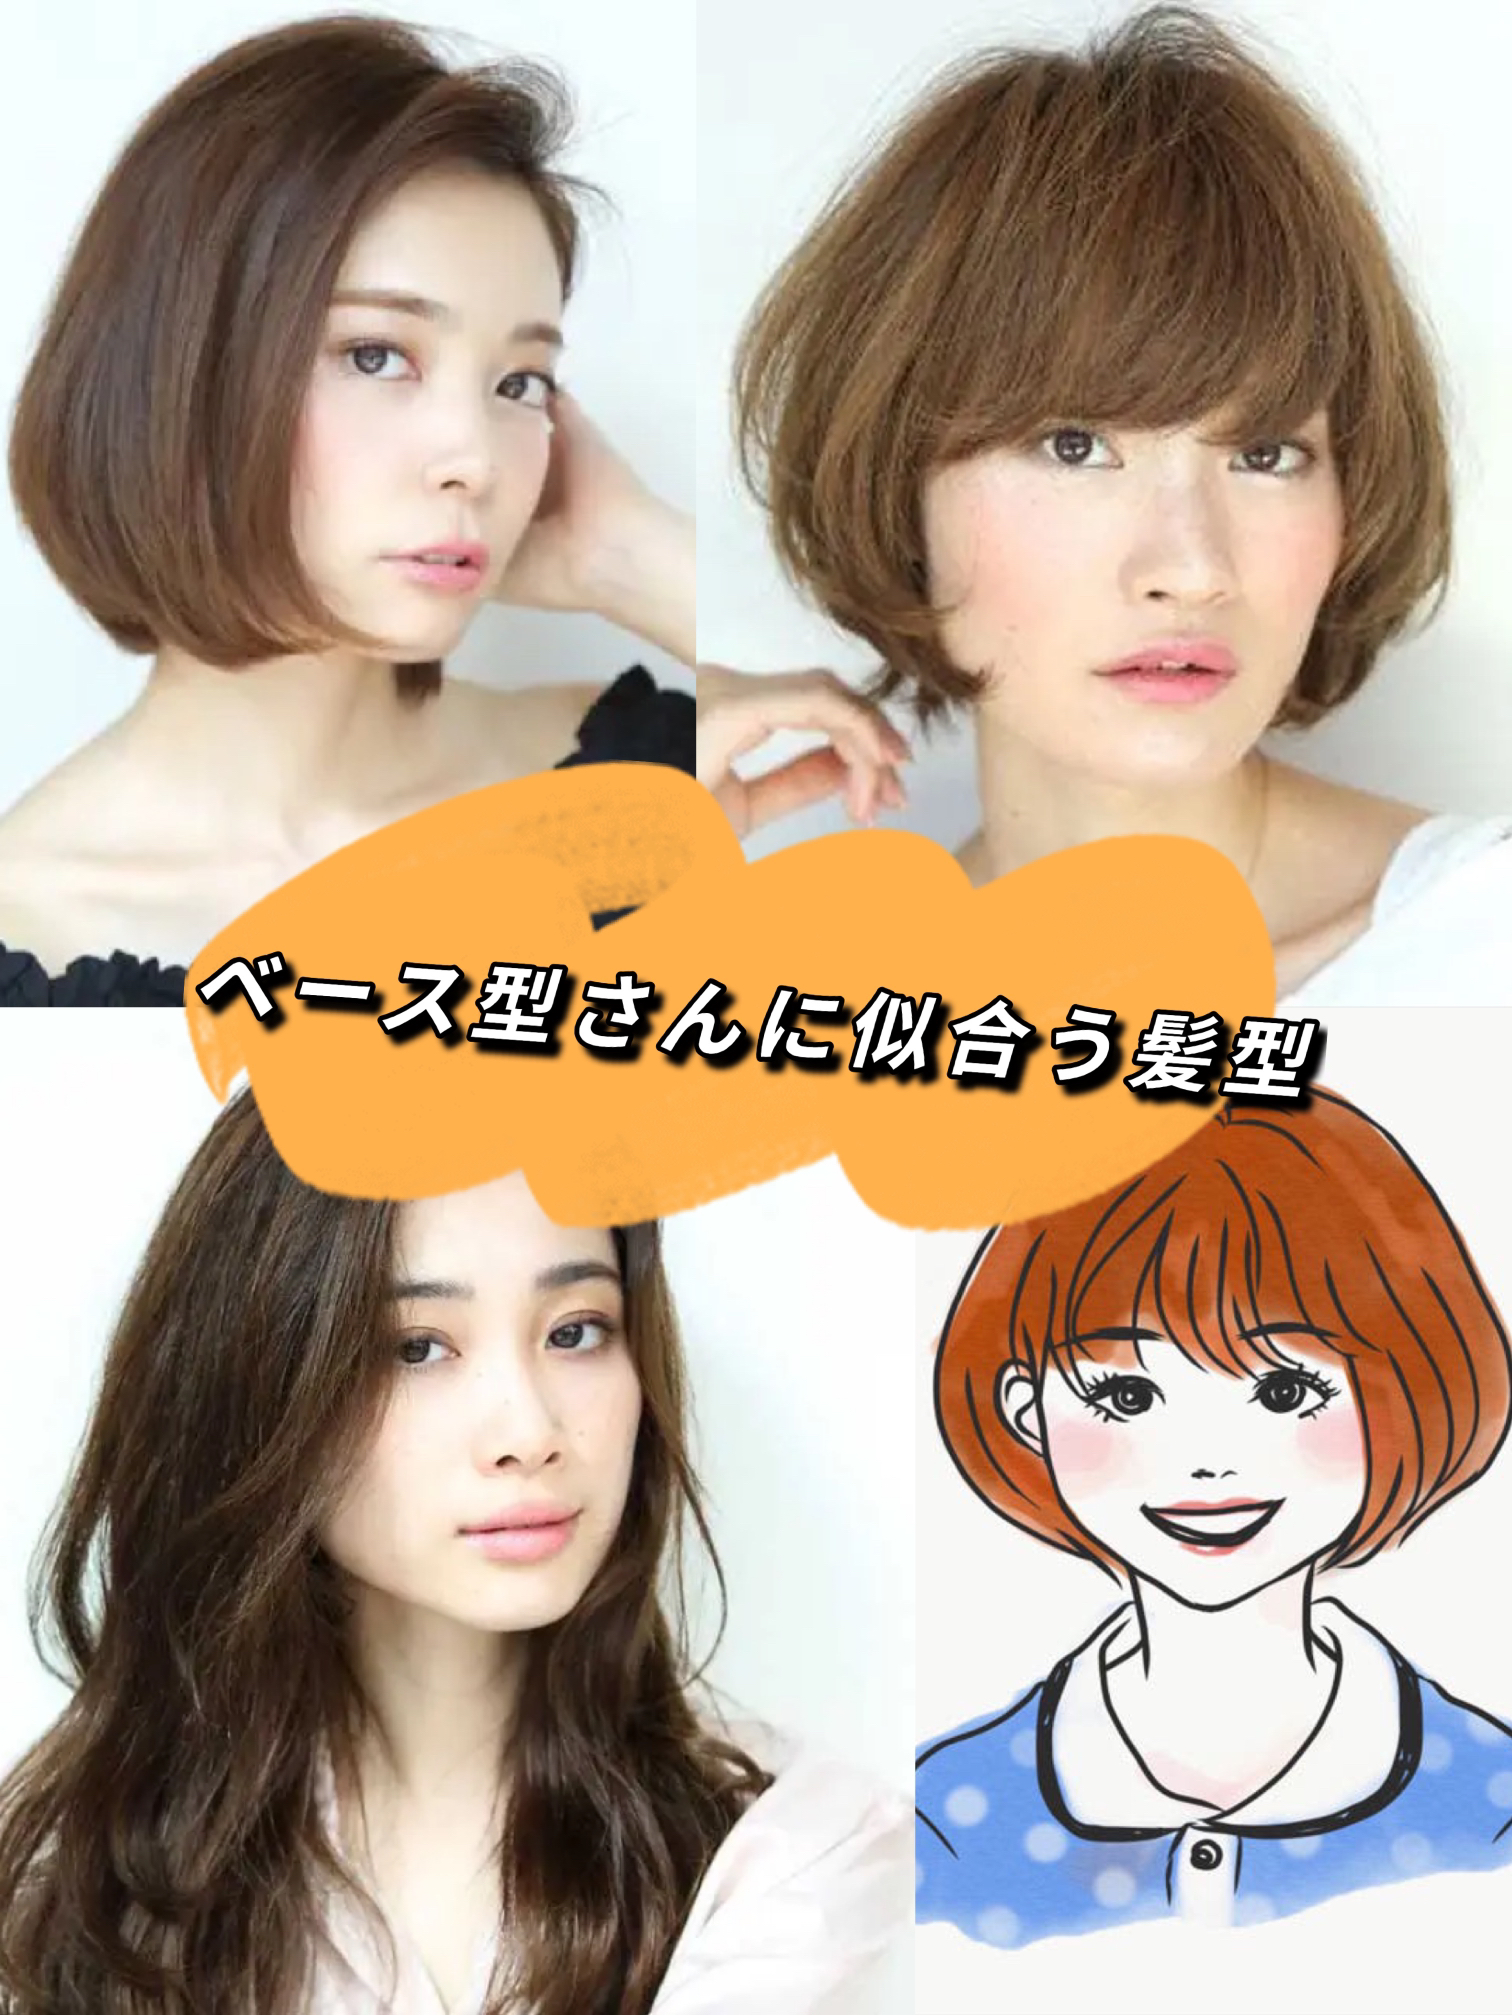 ベース型さんに似合う髪形 ヘアスタイルとは Aika Hairが投稿したフォトブック Lemon8